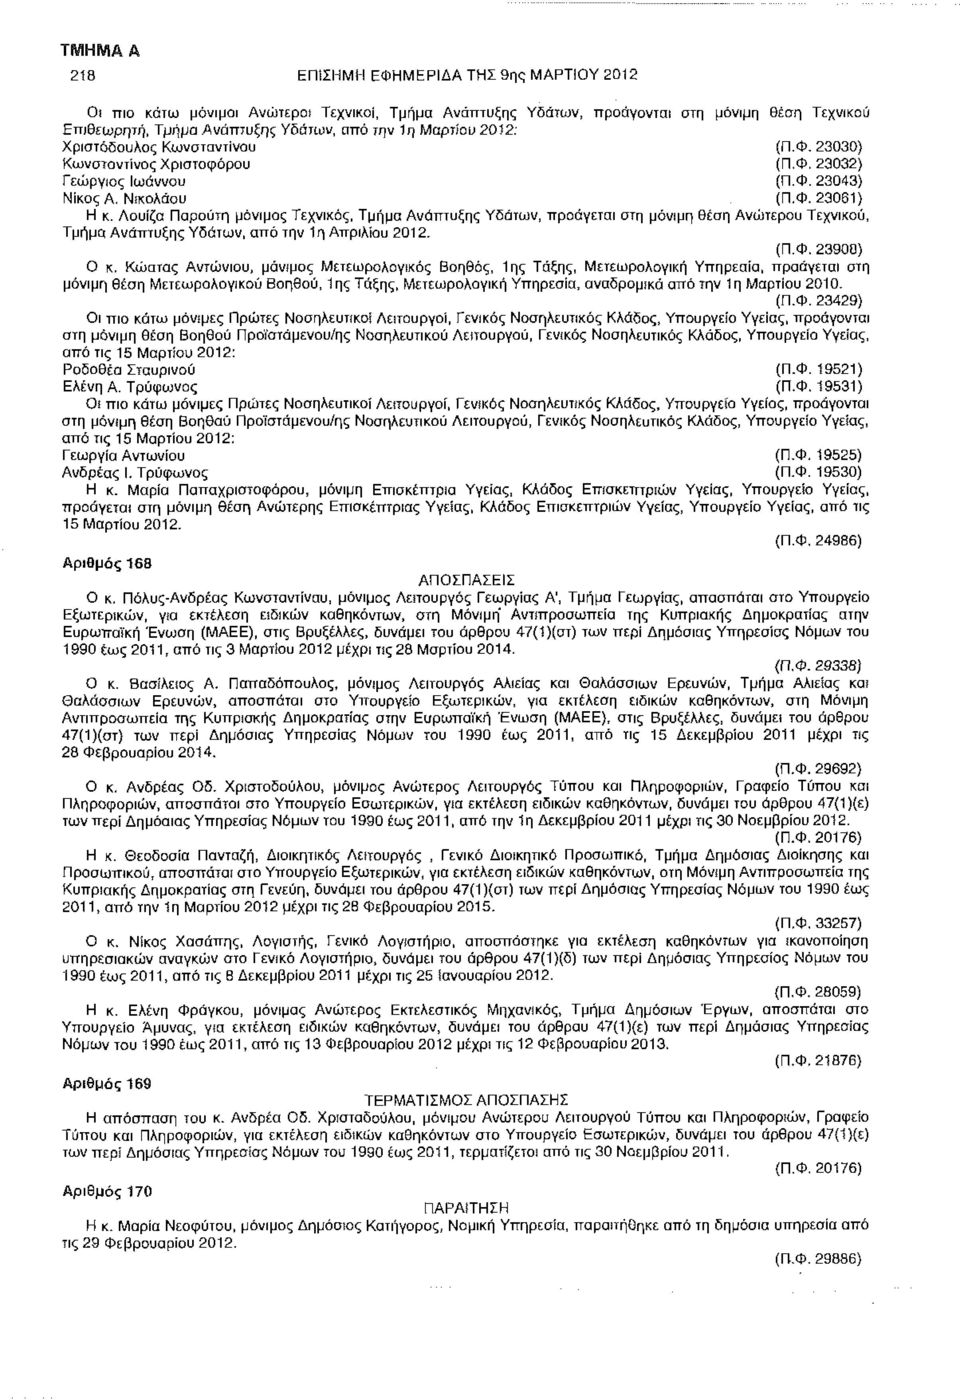 Λουίζα Παρούτη μόνιμος Τεχνικός, Τμήμα Ανάπτυξης Υδάτων, προάγεται στη μόνιμη θέση Ανώτερου Τεχνικού, Τμήμα Ανάπτυξης Υδάτων, από την 1η Απριλίου 2012. (Π.Φ. 23908) Ο κ.